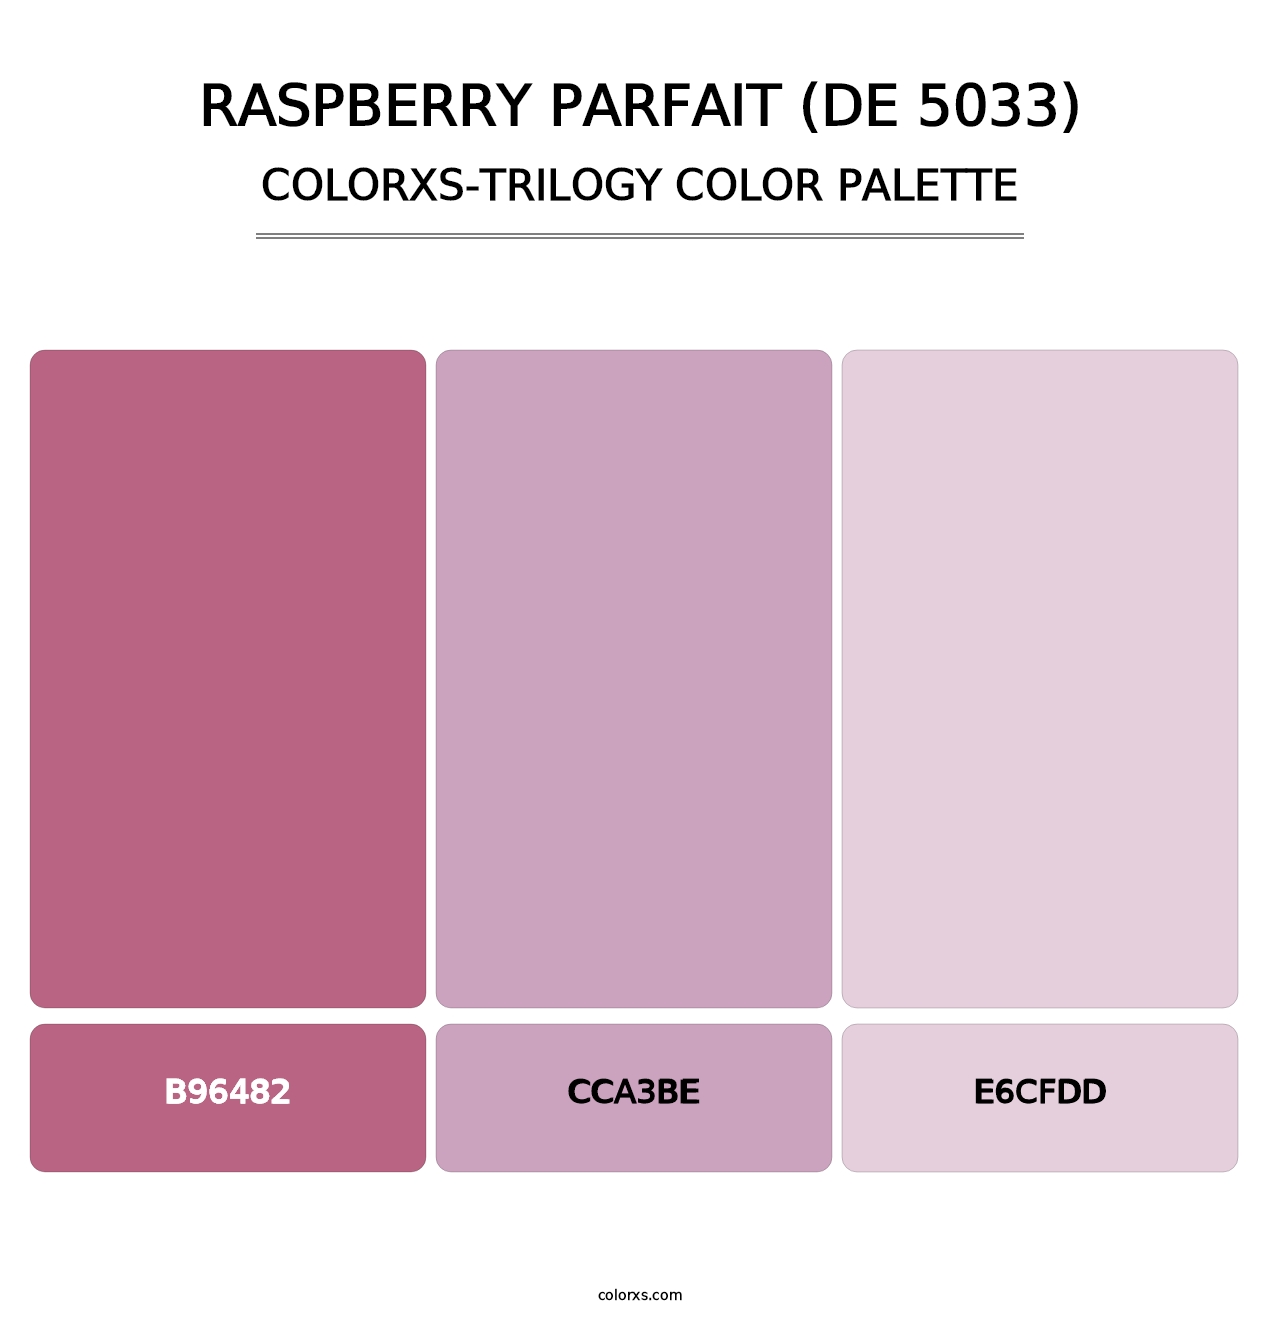 Raspberry Parfait (DE 5033) - Colorxs Trilogy Palette